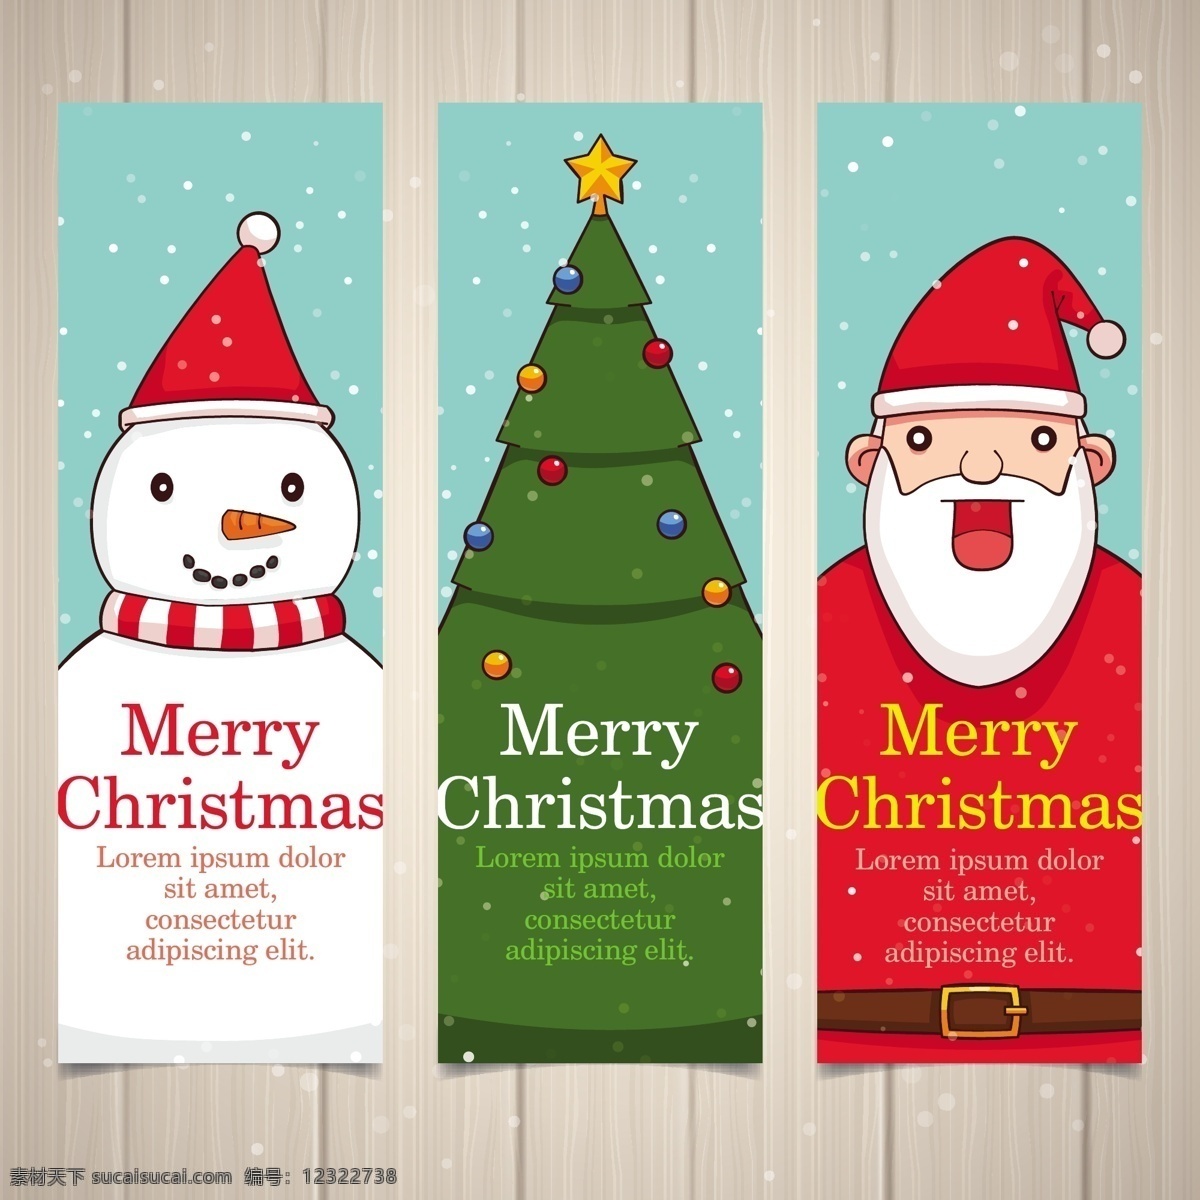 三个 圣诞 元素 横幅 2018 圣诞节 节日素材 圣诞横幅 圣诞素材 圣诞元素 圣诞元素横幅